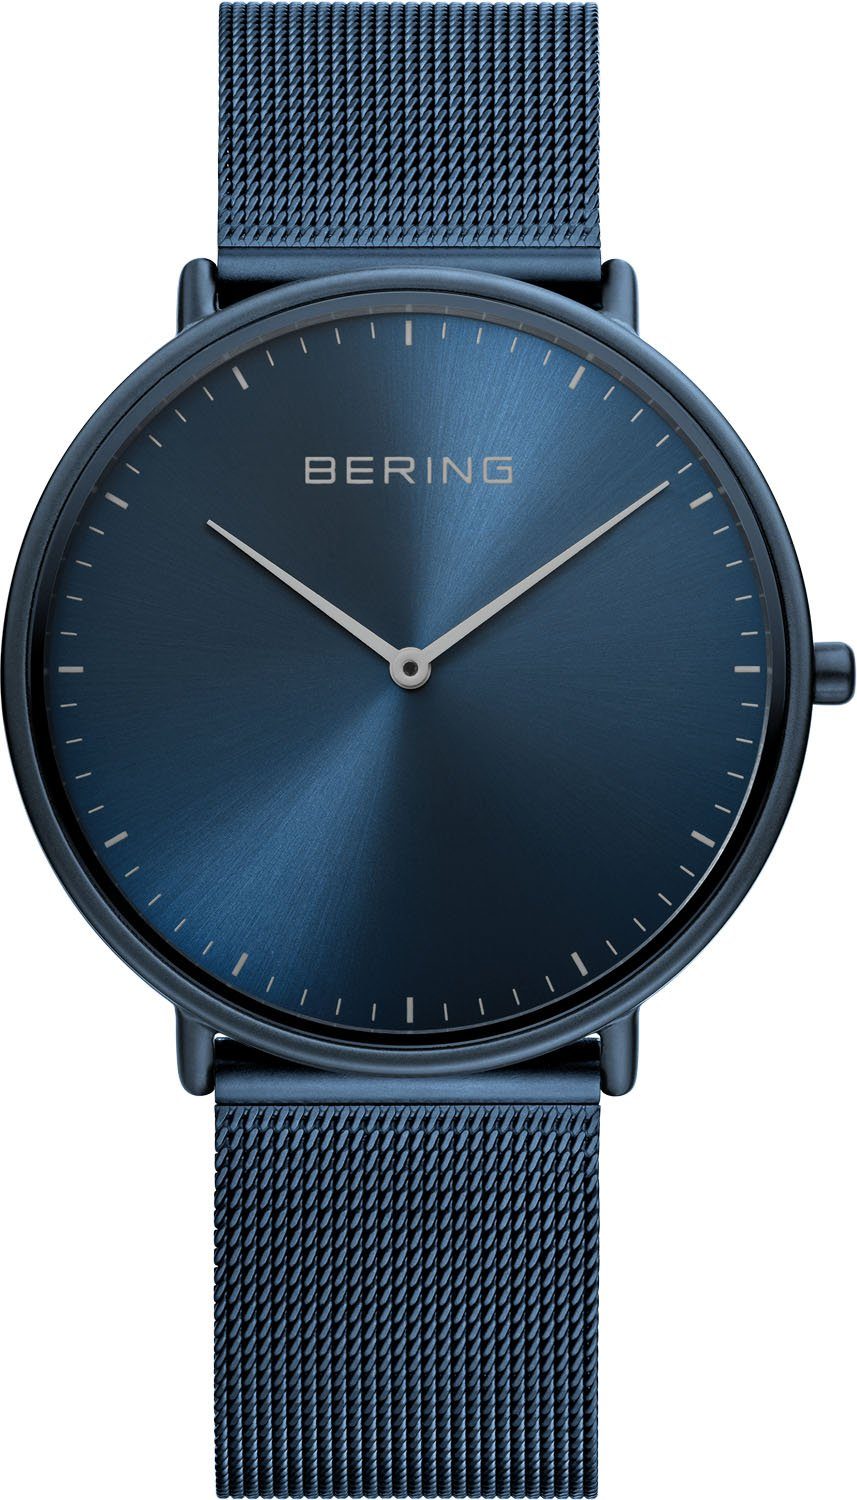 Günstige Bering Uhren online kaufen » Bering Uhren SALE | OTTO